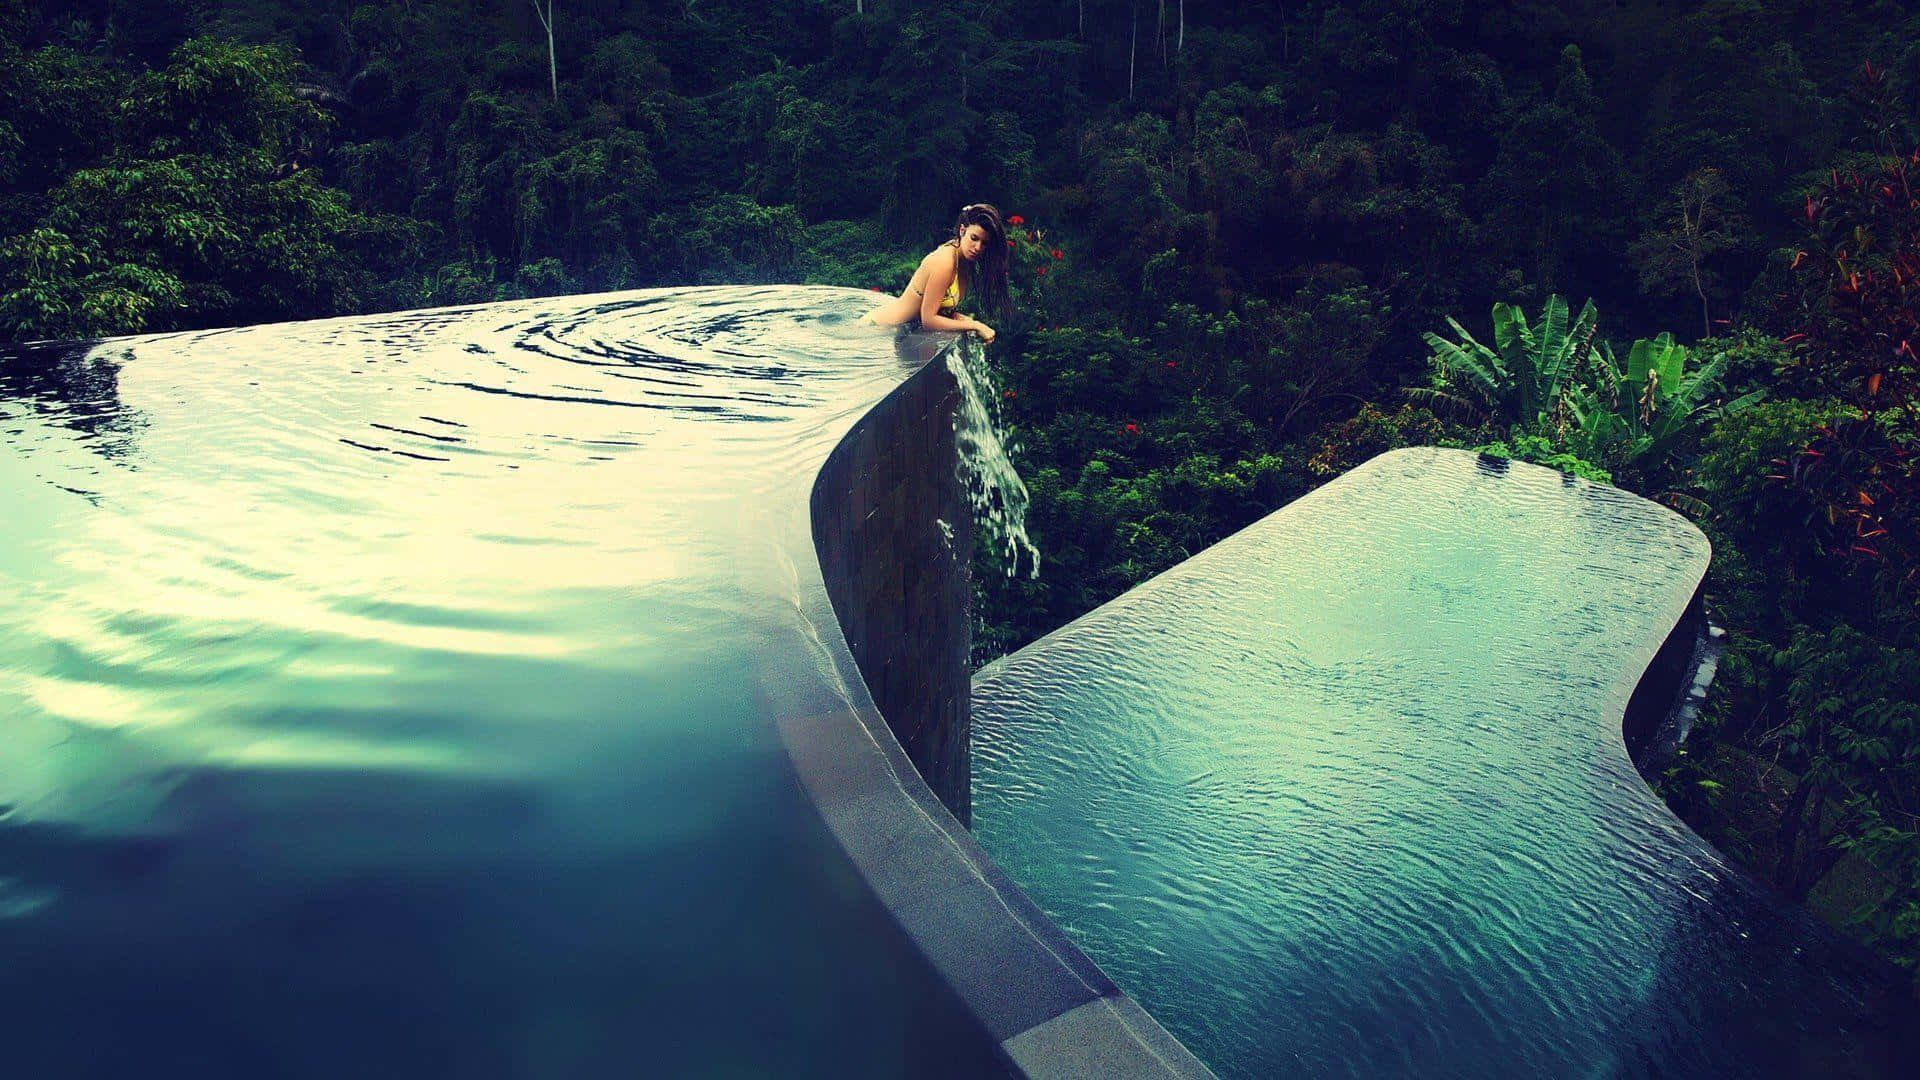 Einefrau Steht Auf Einem Sims In Einem Pool.